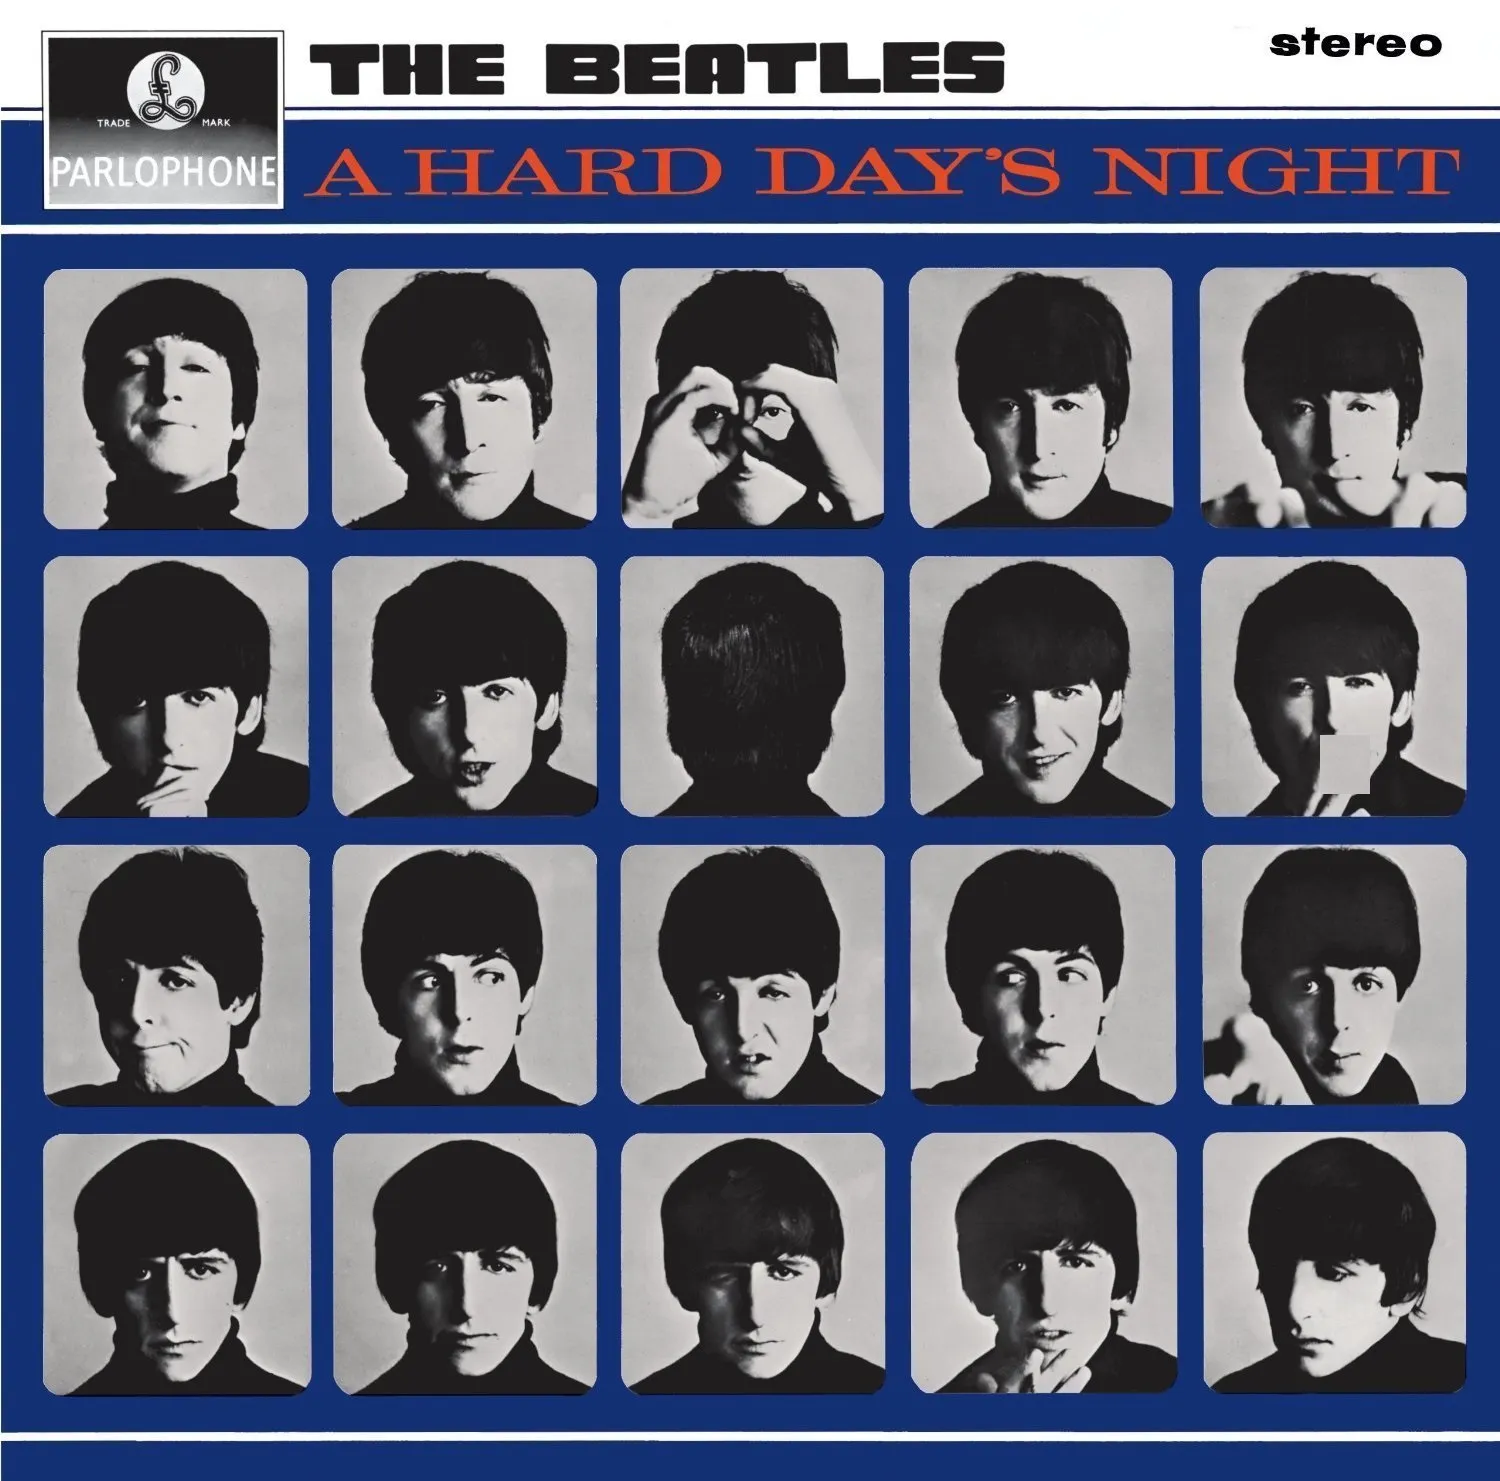 Пластинка The Beatles - A Hard Day's Night